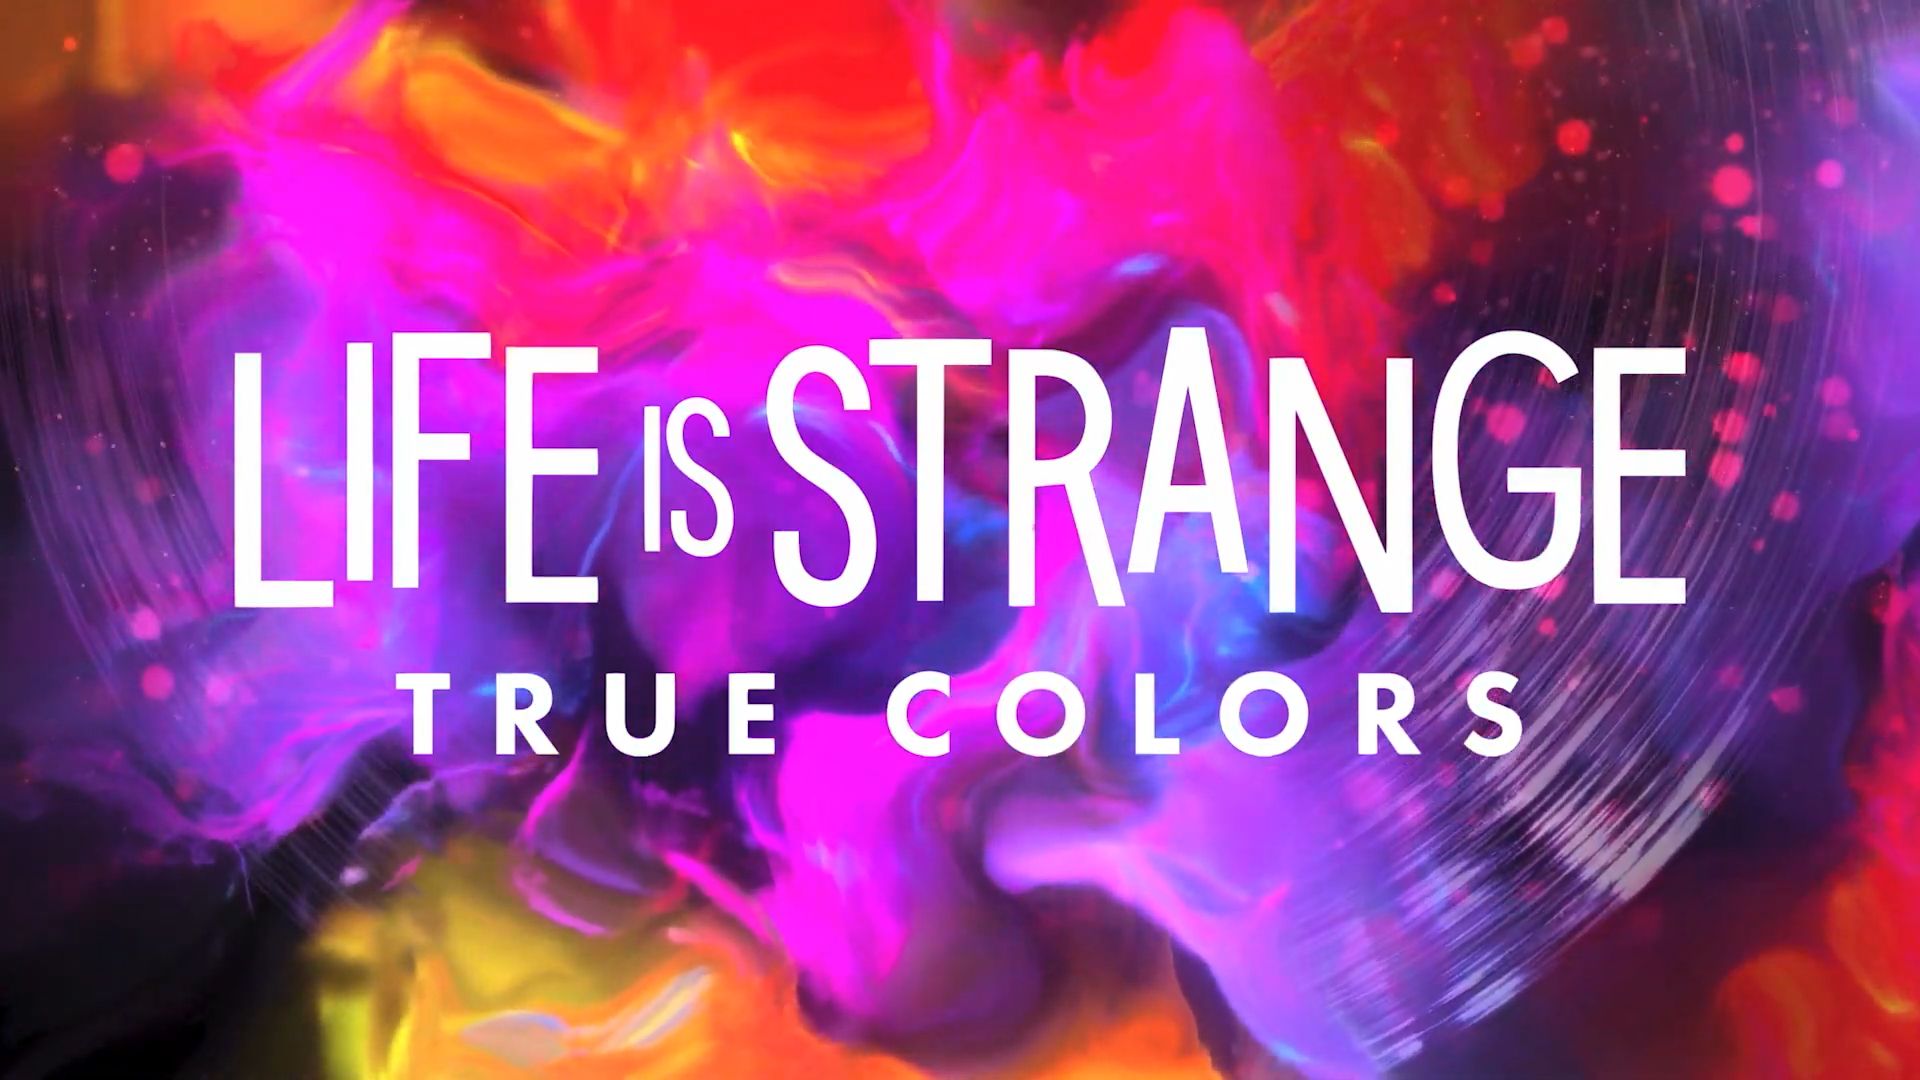 Life Is Strange True Cores